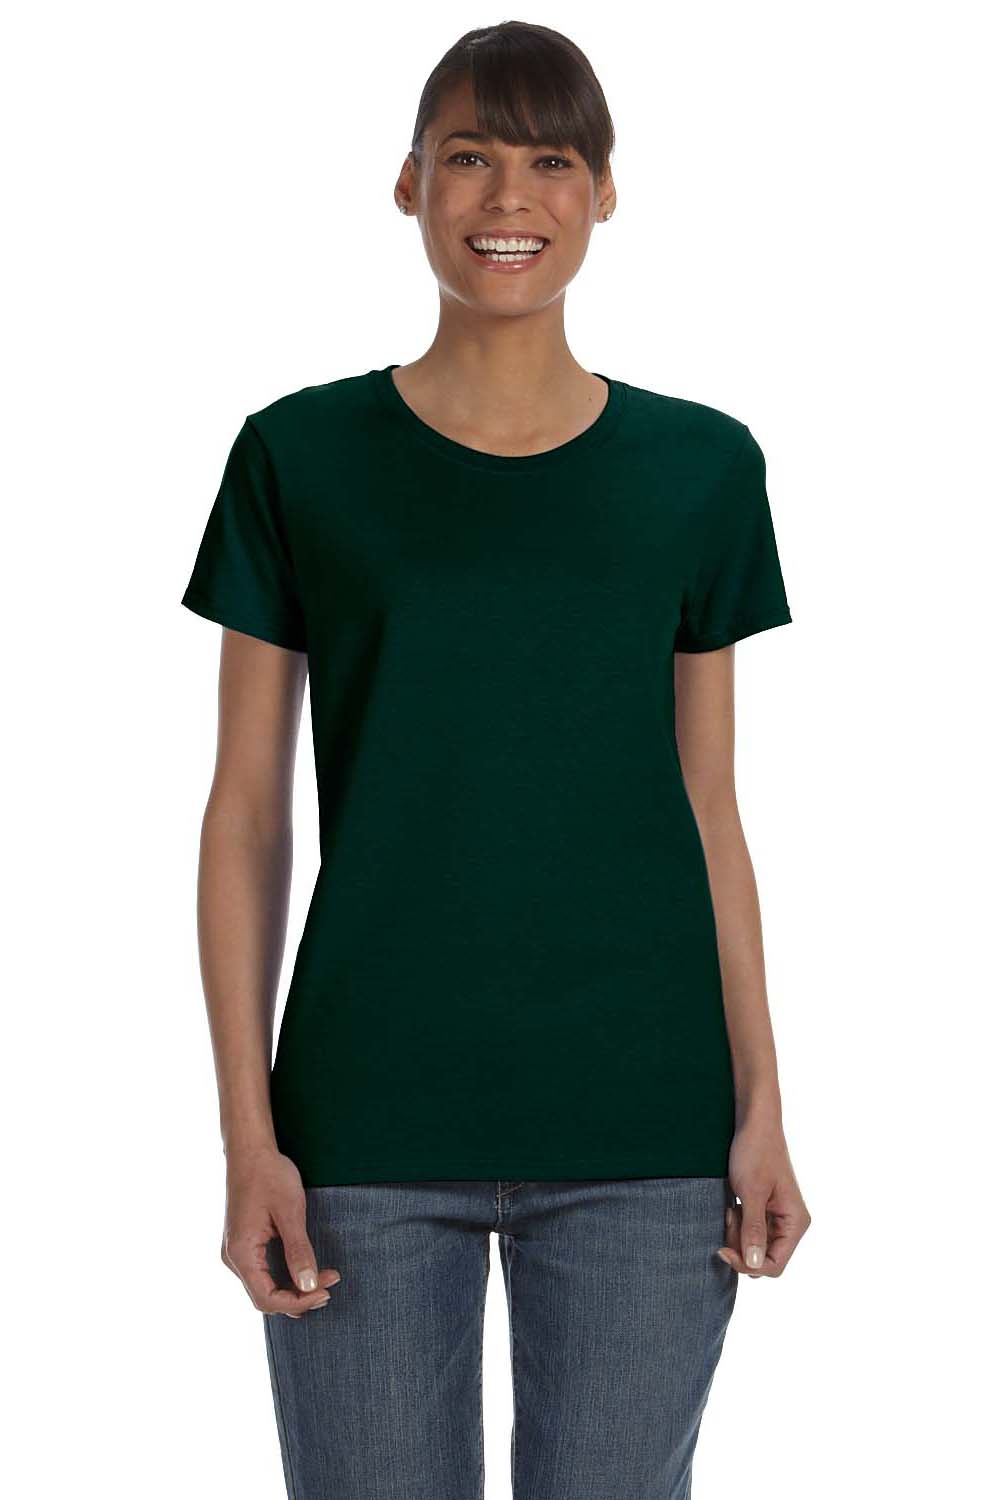 Gildan G500L Womens Short Sleeve Crewneck T-Shirt Forest Green Front